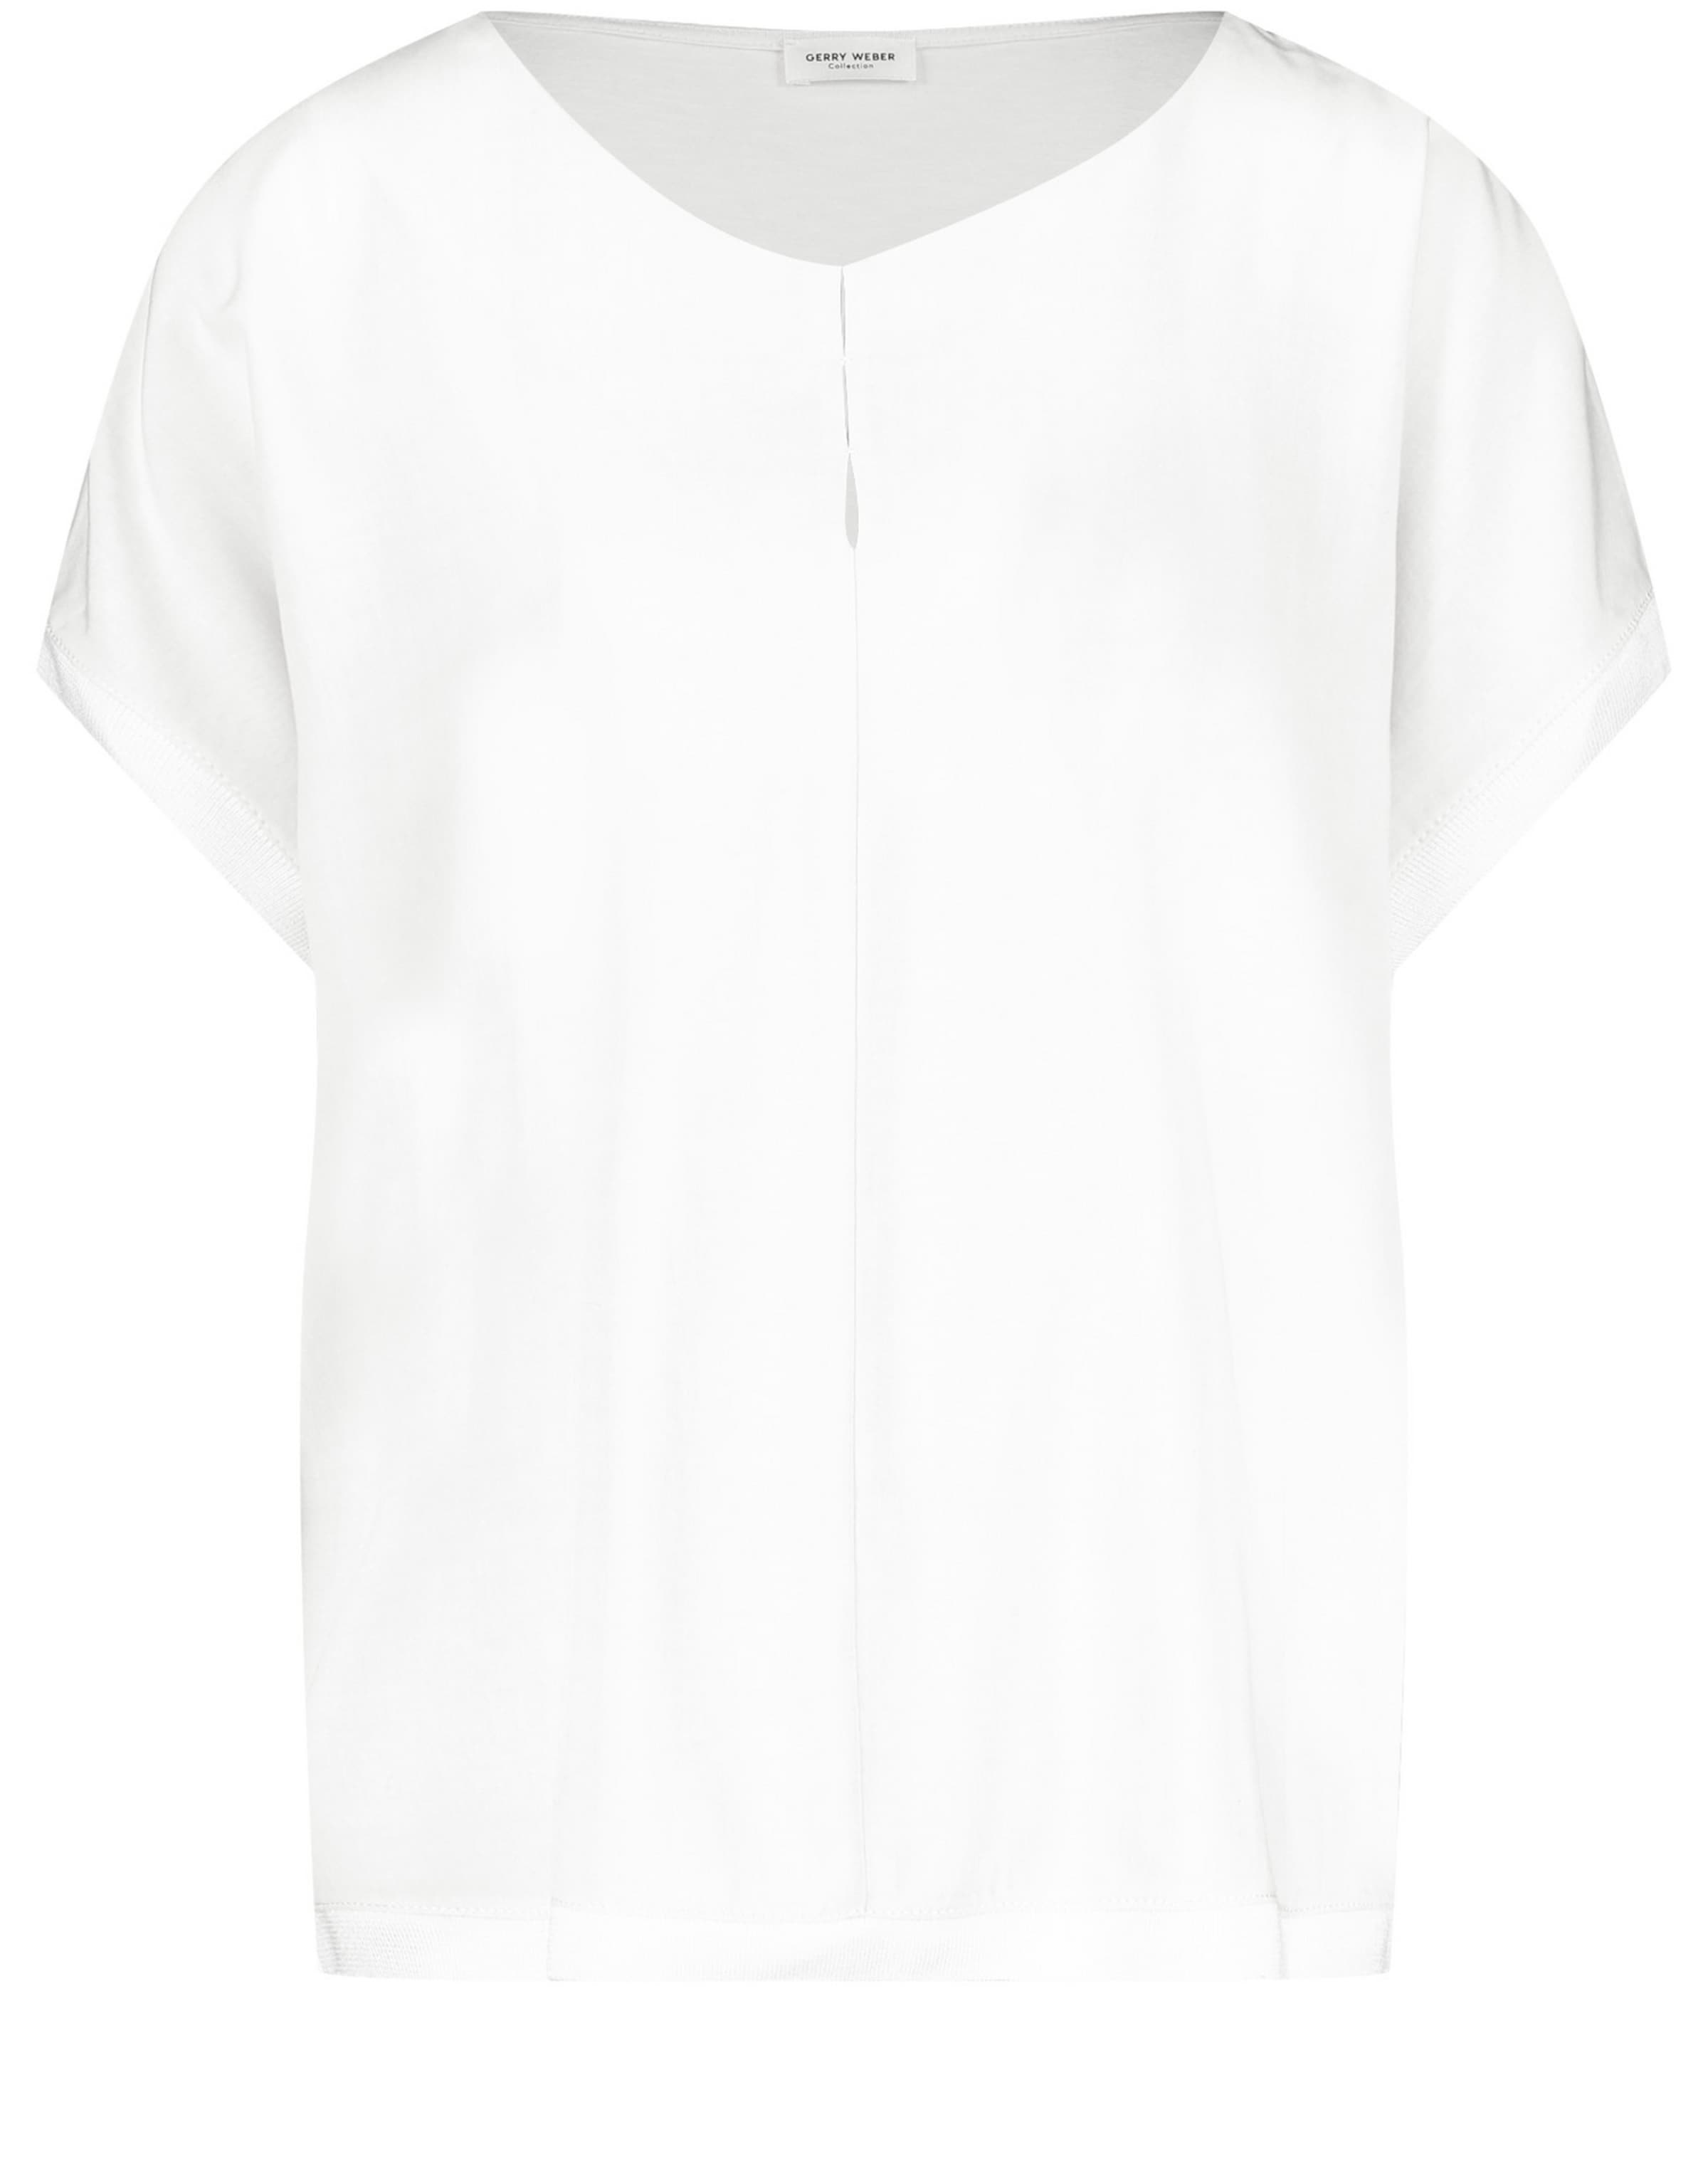 Frauen Shirts & Tops GERRY WEBER Shirt in Weiß - OF63739